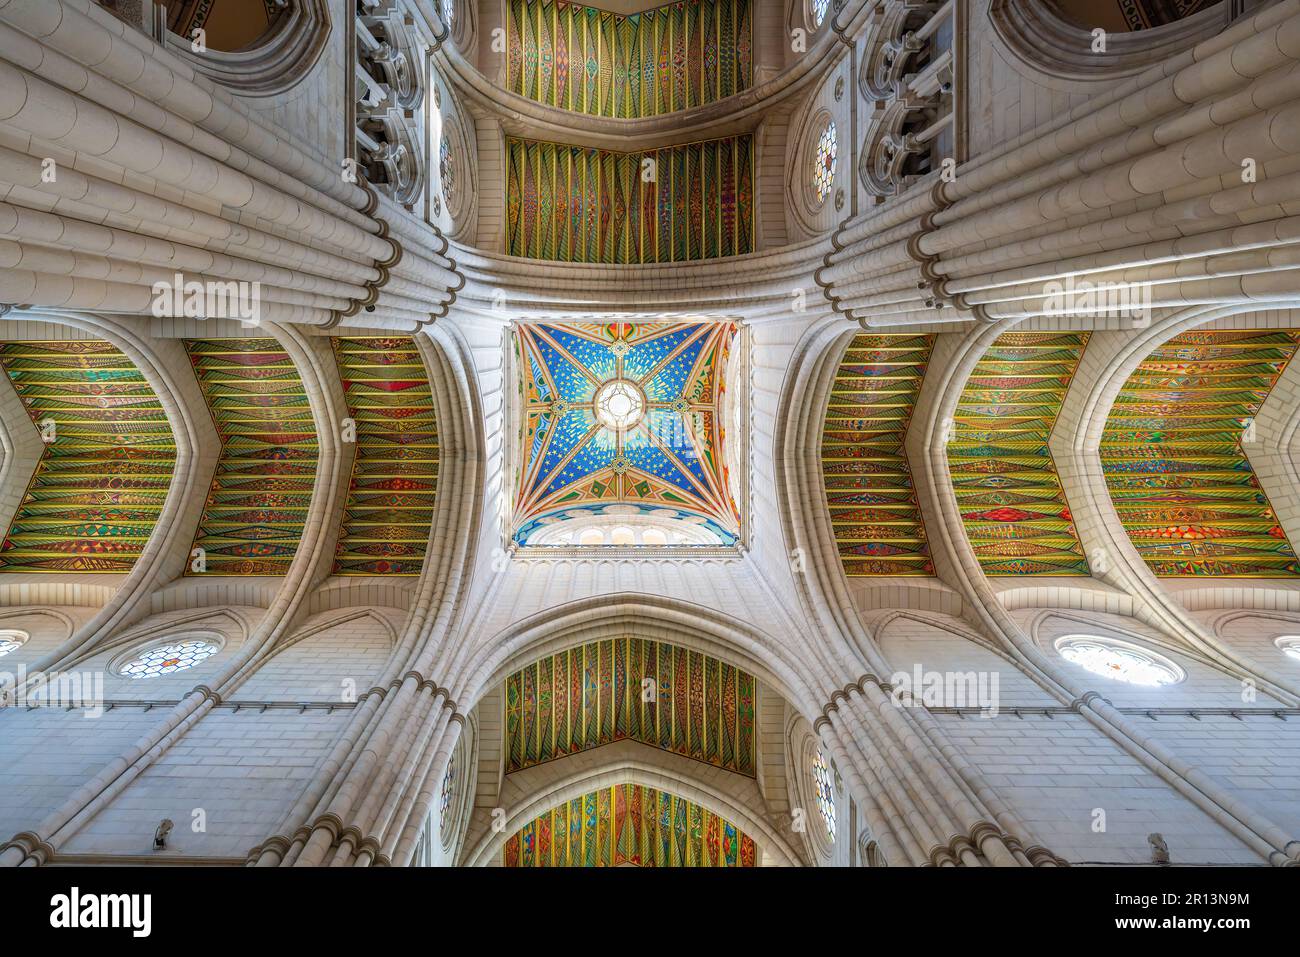 Plafond de l'intérieur de la cathédrale d'Almudena - Madrid, Espagne Banque D'Images